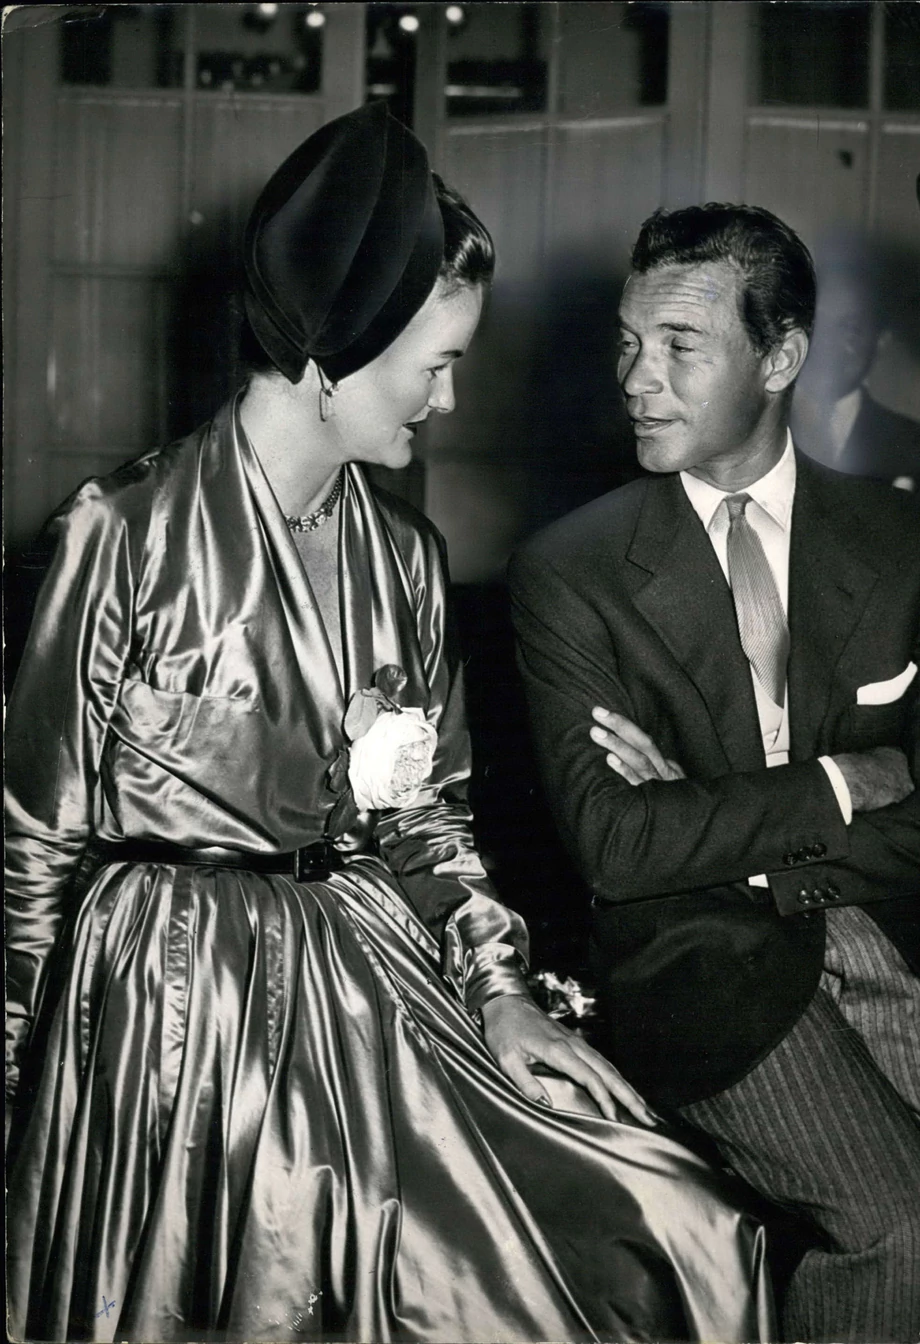 Duke wzięła ślub z Porfirio Rubirosa, „dominikańskim dyplomatą i międzynarodowym playboyem”, jak w owym czasie dość często opisywano go w tabloidach. Rubirosa stał się znany z powodu przypisywanych mu licznych romansów ze sławnymi kobietami, w tym Marilyn Monroe czy Judy Garland.